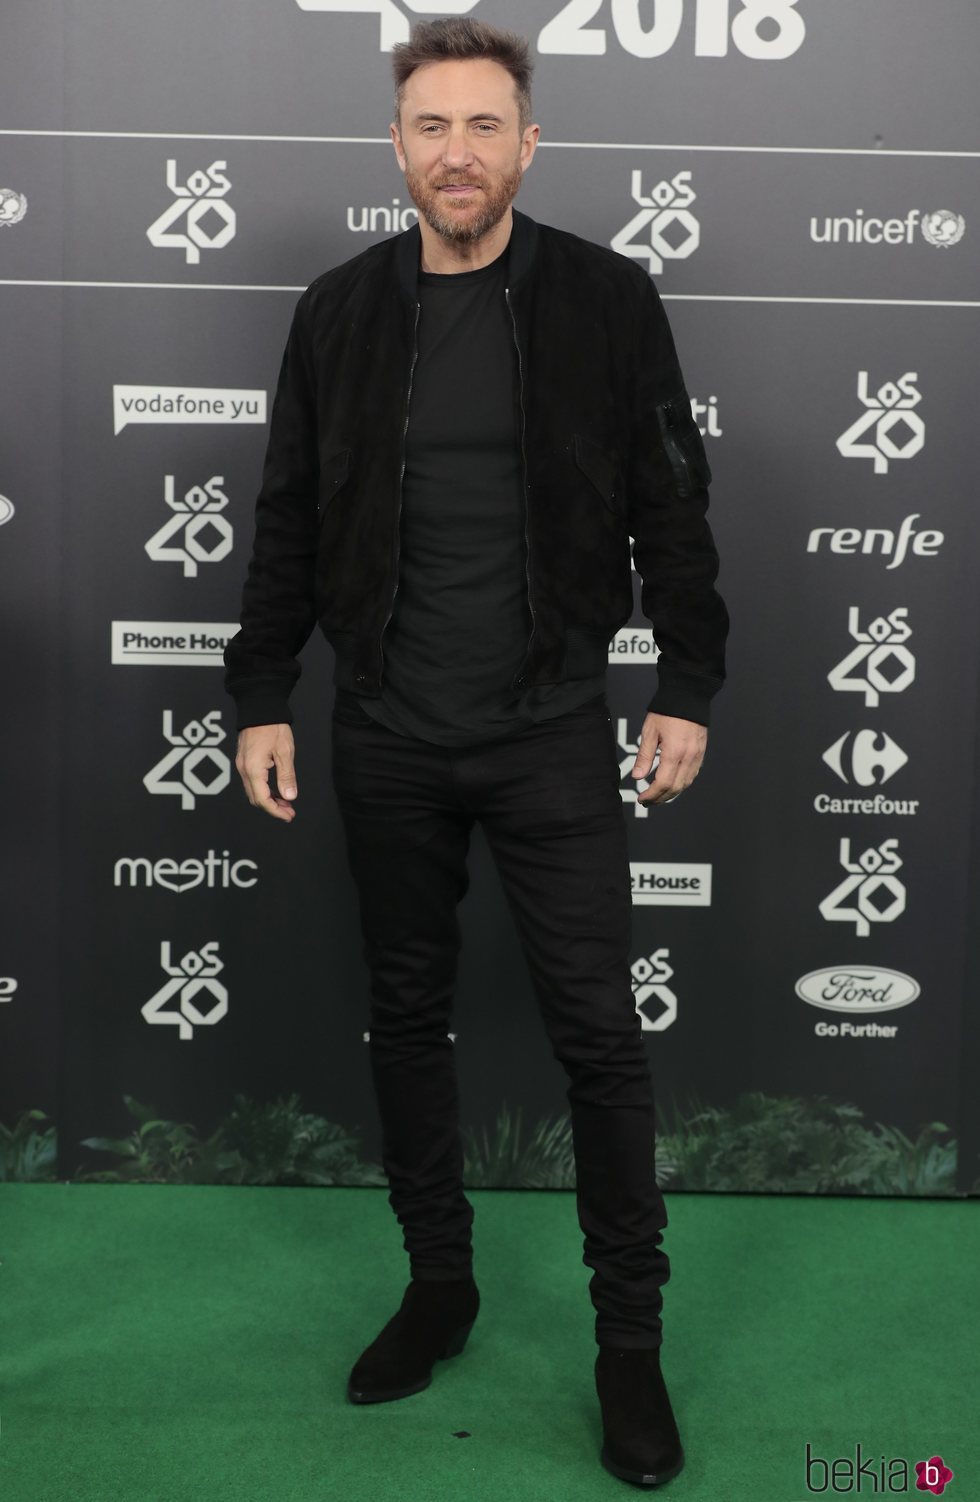 David Guetta en Los 40 Music Awards 2018